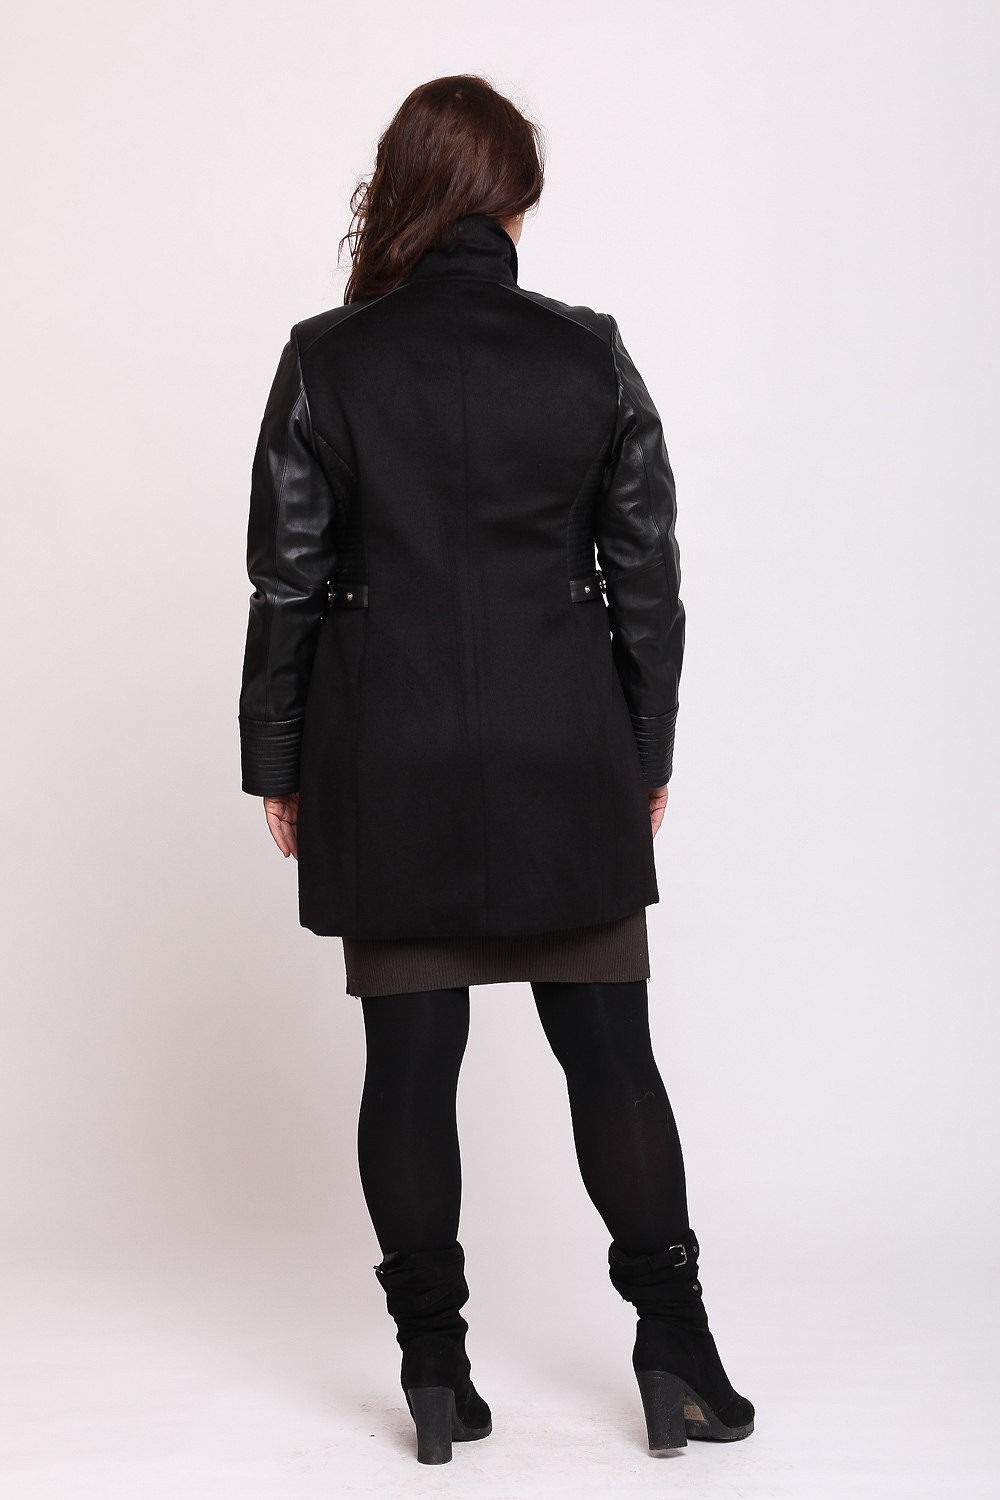 Кожаная куртка черная на молнии 46955